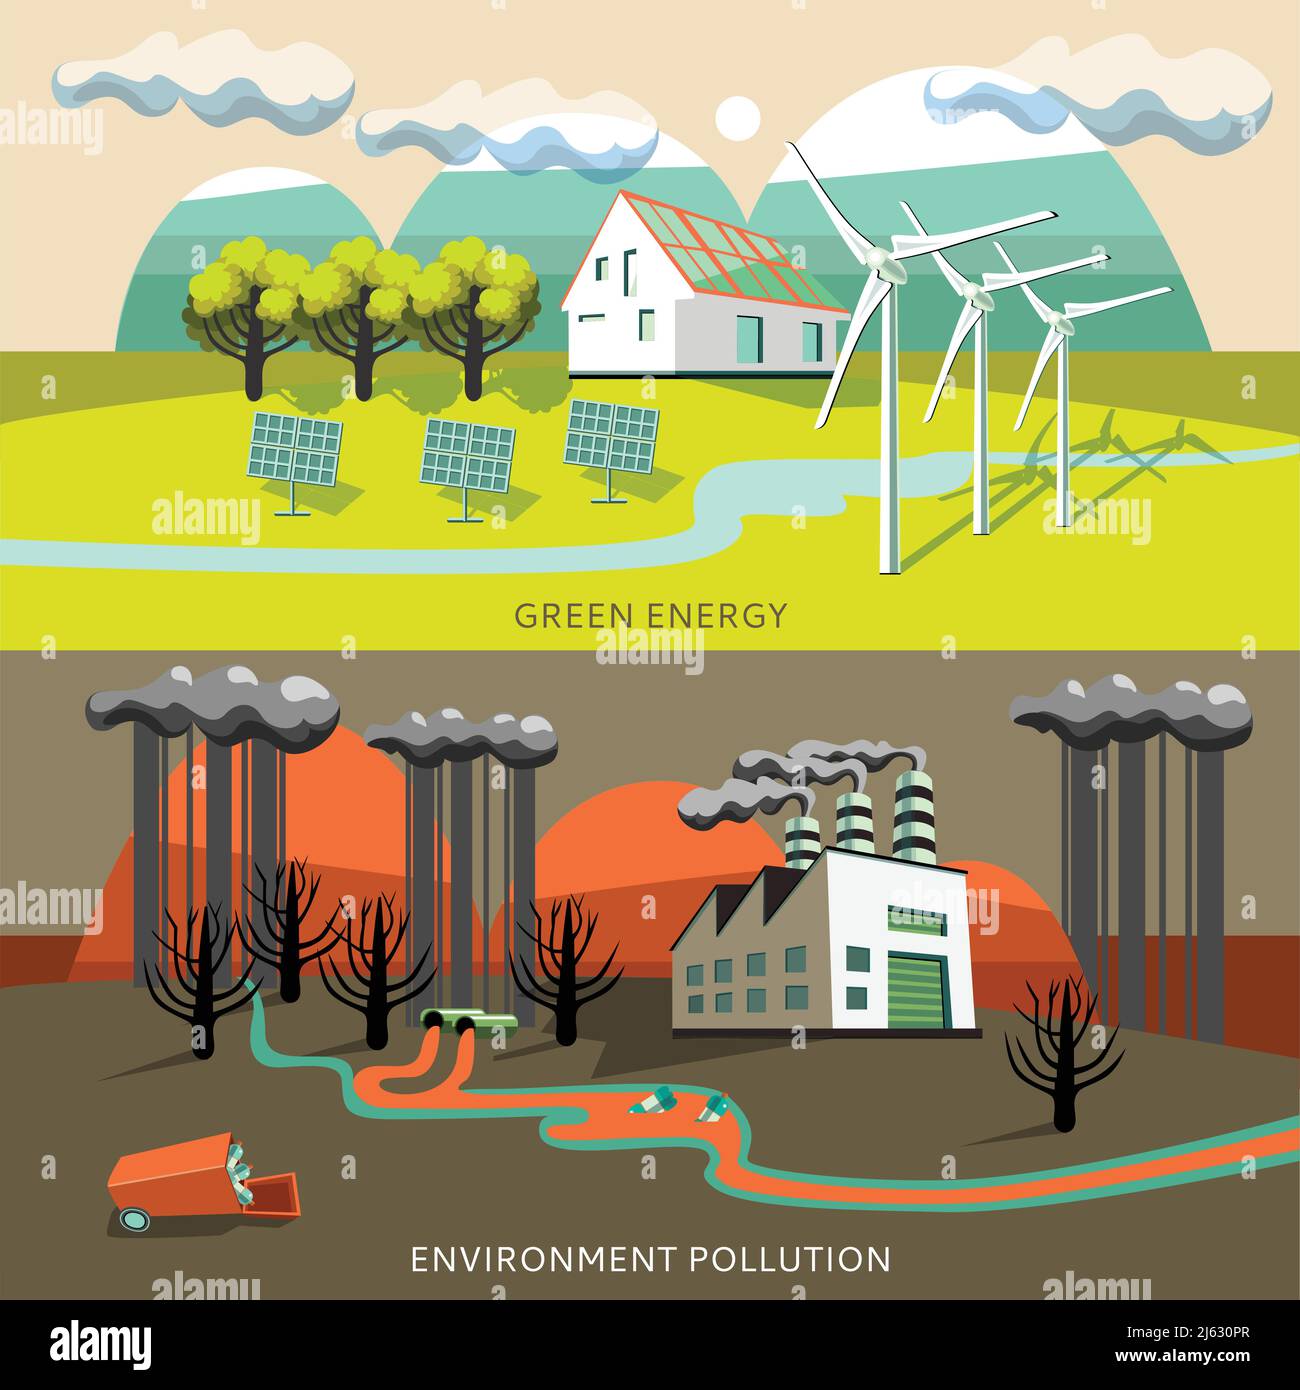 Grüne Energie und Umweltverschmutzung Banner mit Verschmutzung und Sauberkeit Von Luftbergen Flüsse isoliert Vektor-Illustration Stock Vektor